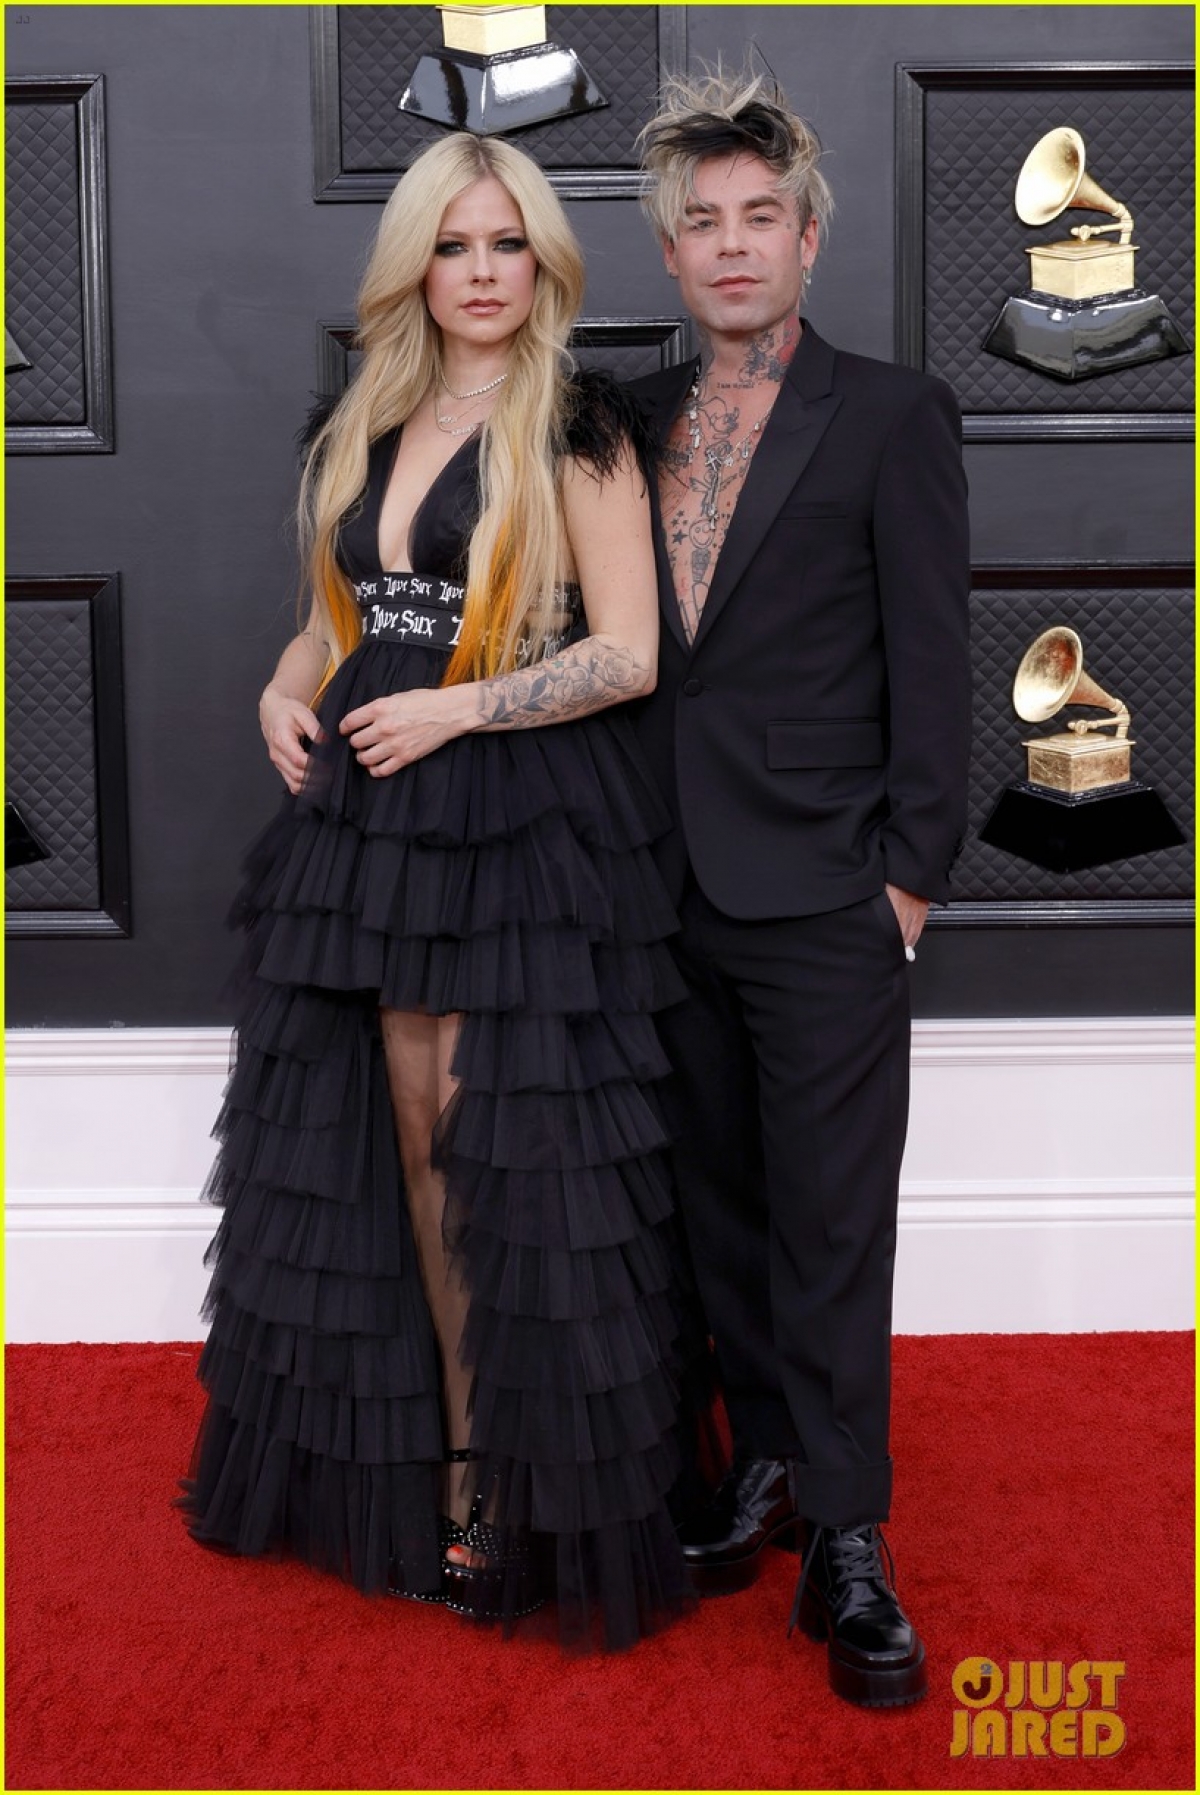 Lựa chọn tông đen đồng điệu, “người đẹp không tuổi” Avril Lavigne và bạn trai Mod Sun đẹp đôi trên thảm đỏ Grammy 2022. Kể từ khi công khai mối quan hệ vào đầu năm 2021, cả hai thoải mái diện đồ đôi và thường xuyên trao nhau những cử chỉ thân mật.